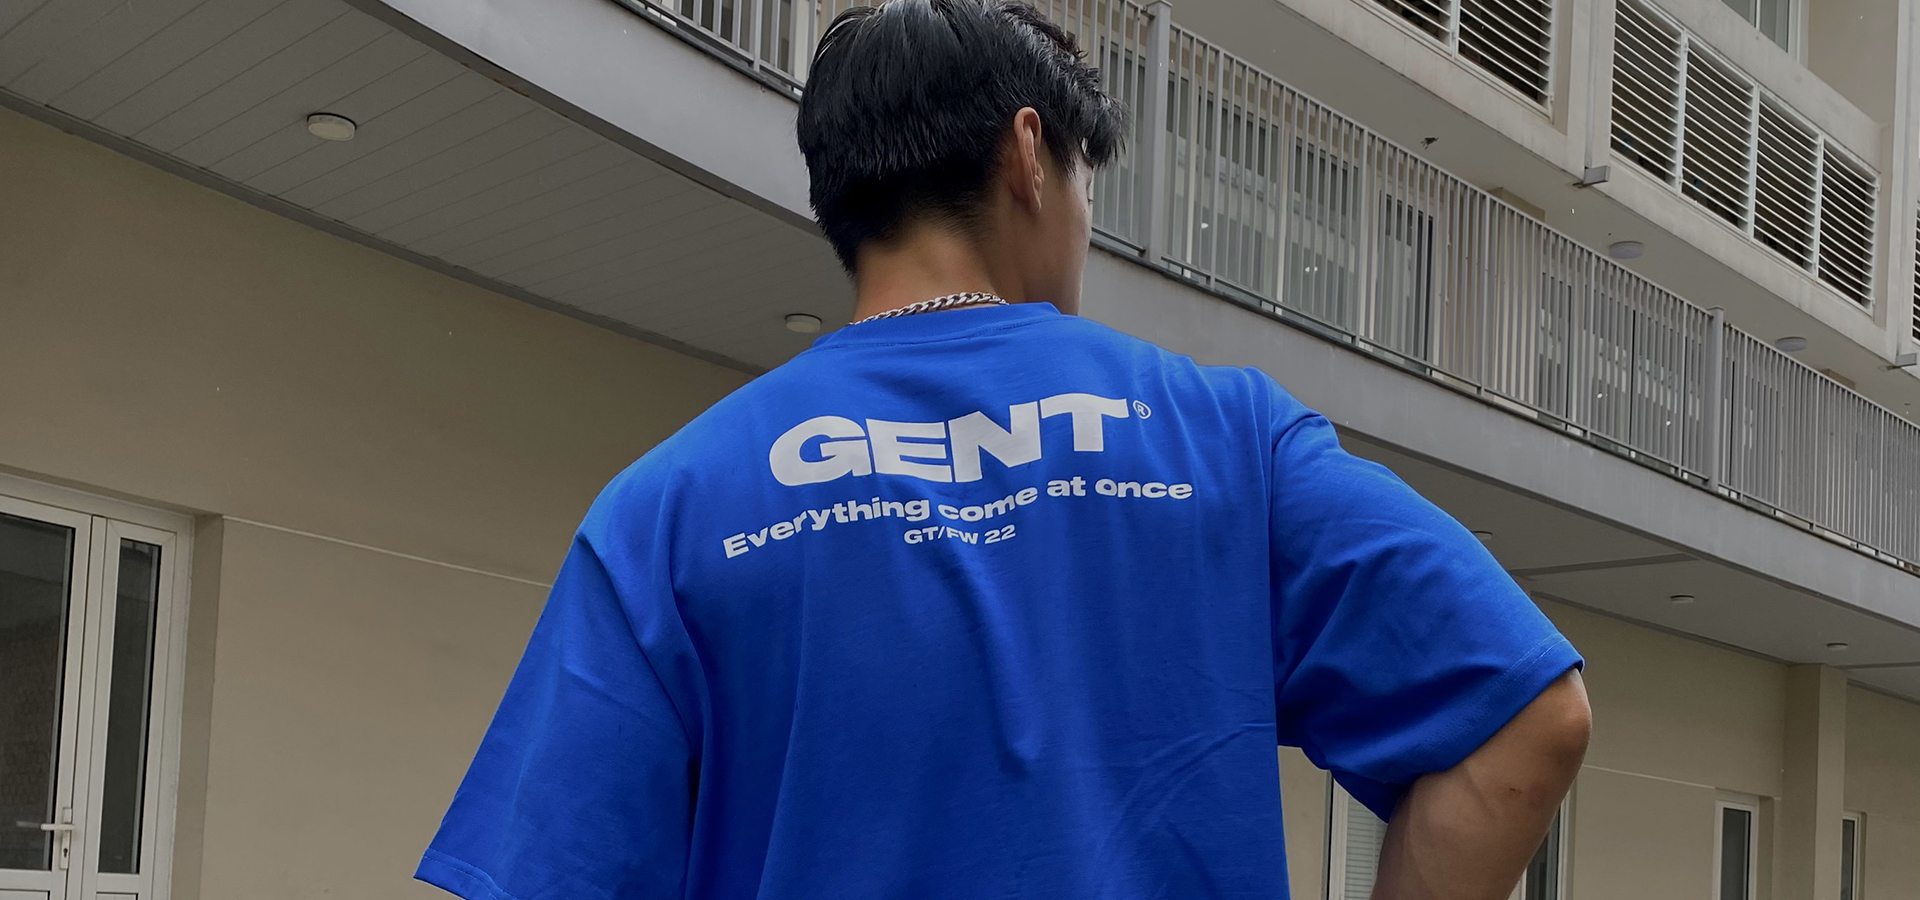 Áo thun thời trang cho thế hệ GenT